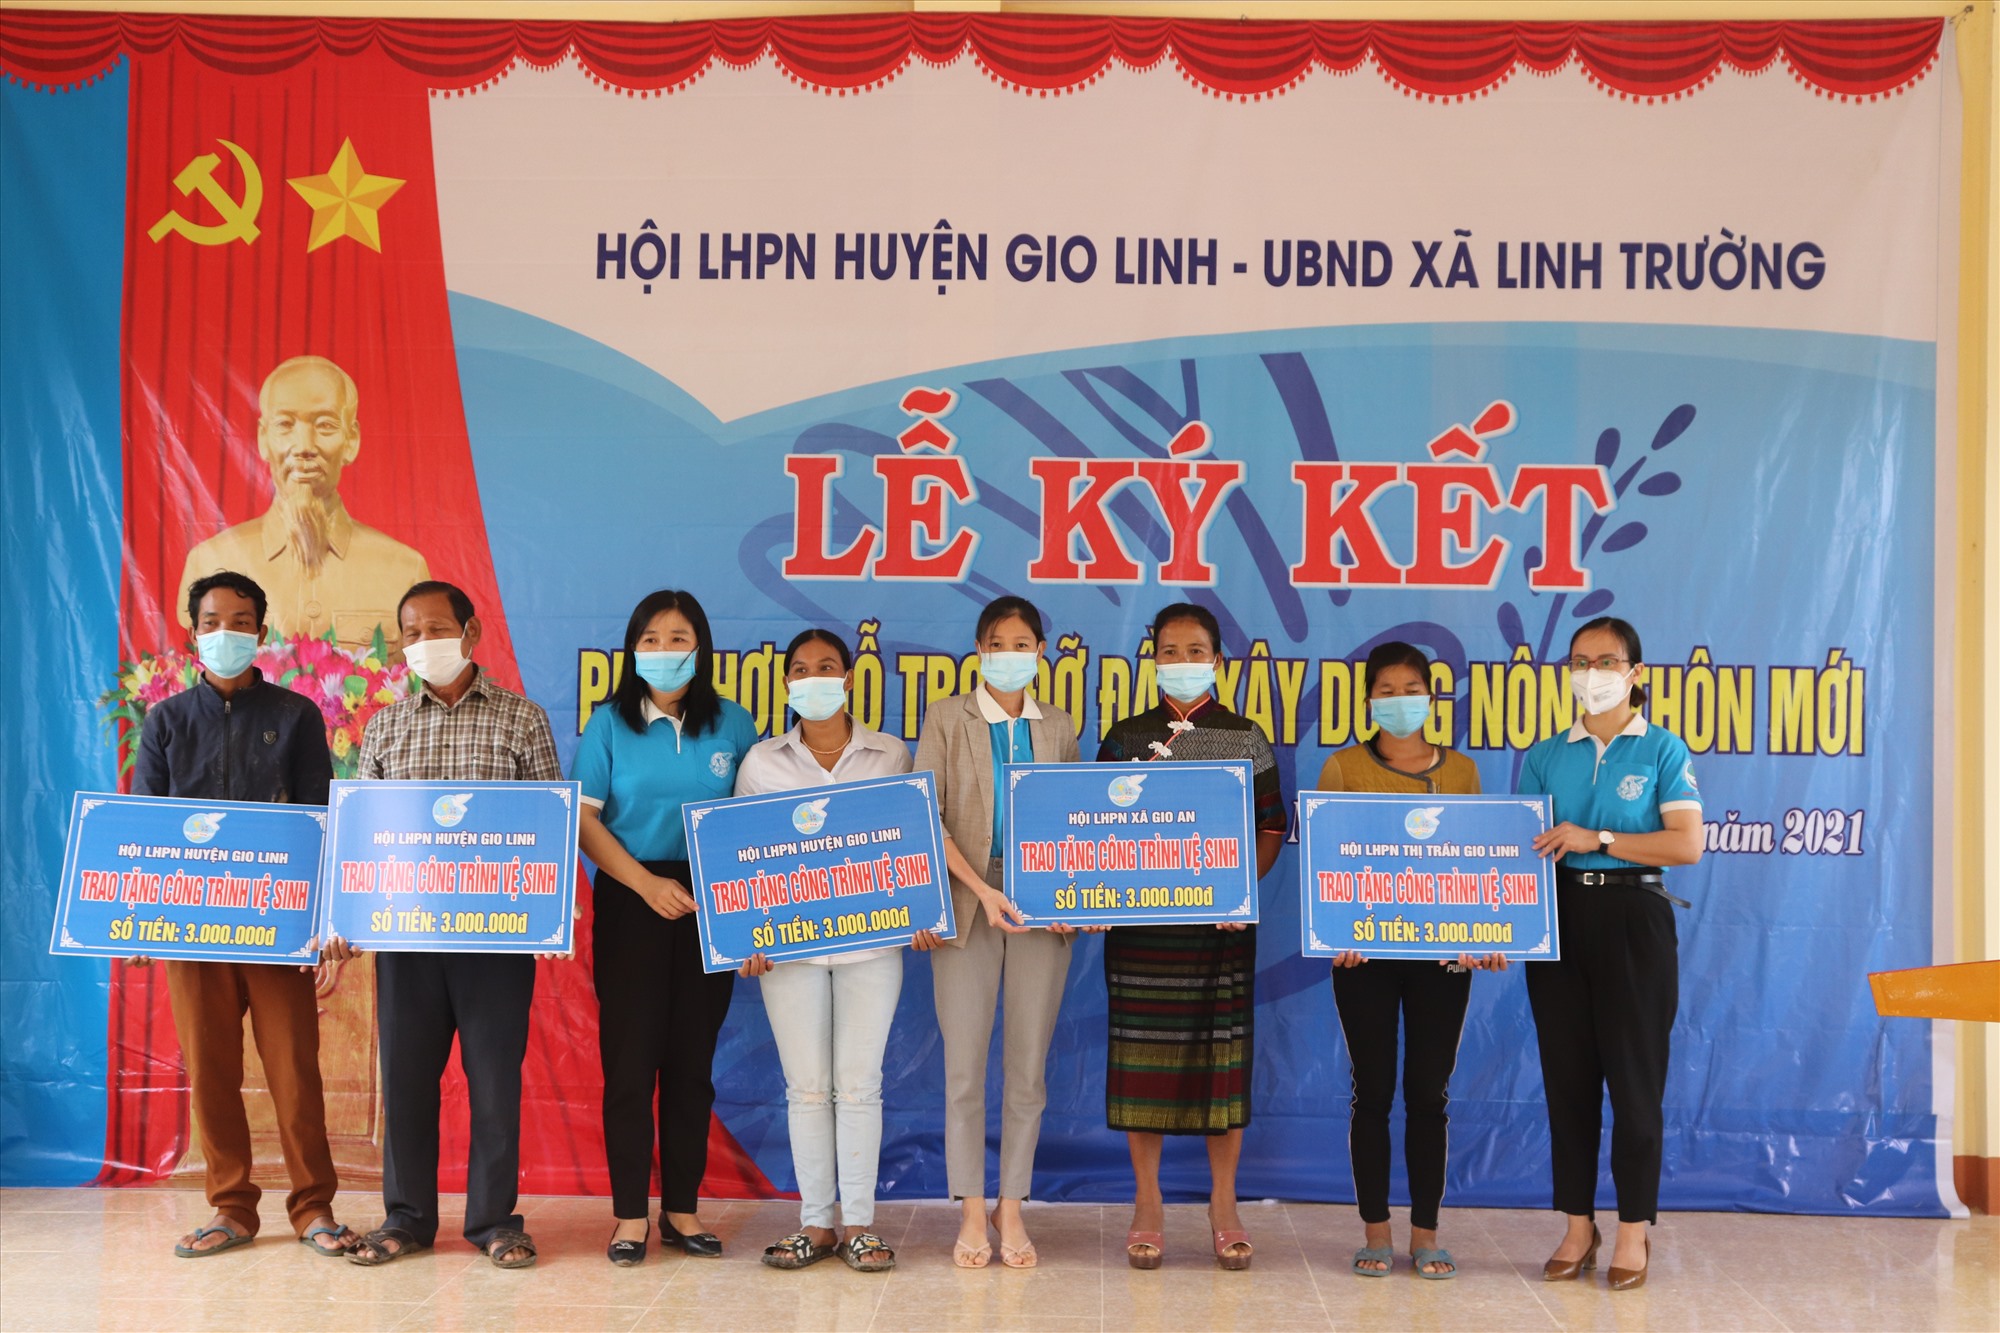 Hội LHPN huyện Gio Linh trao công trình vệ sinh cho hội viên có hoàn cảnh khó khăn ở thôn Sông Ngân - Ảnh: T.P